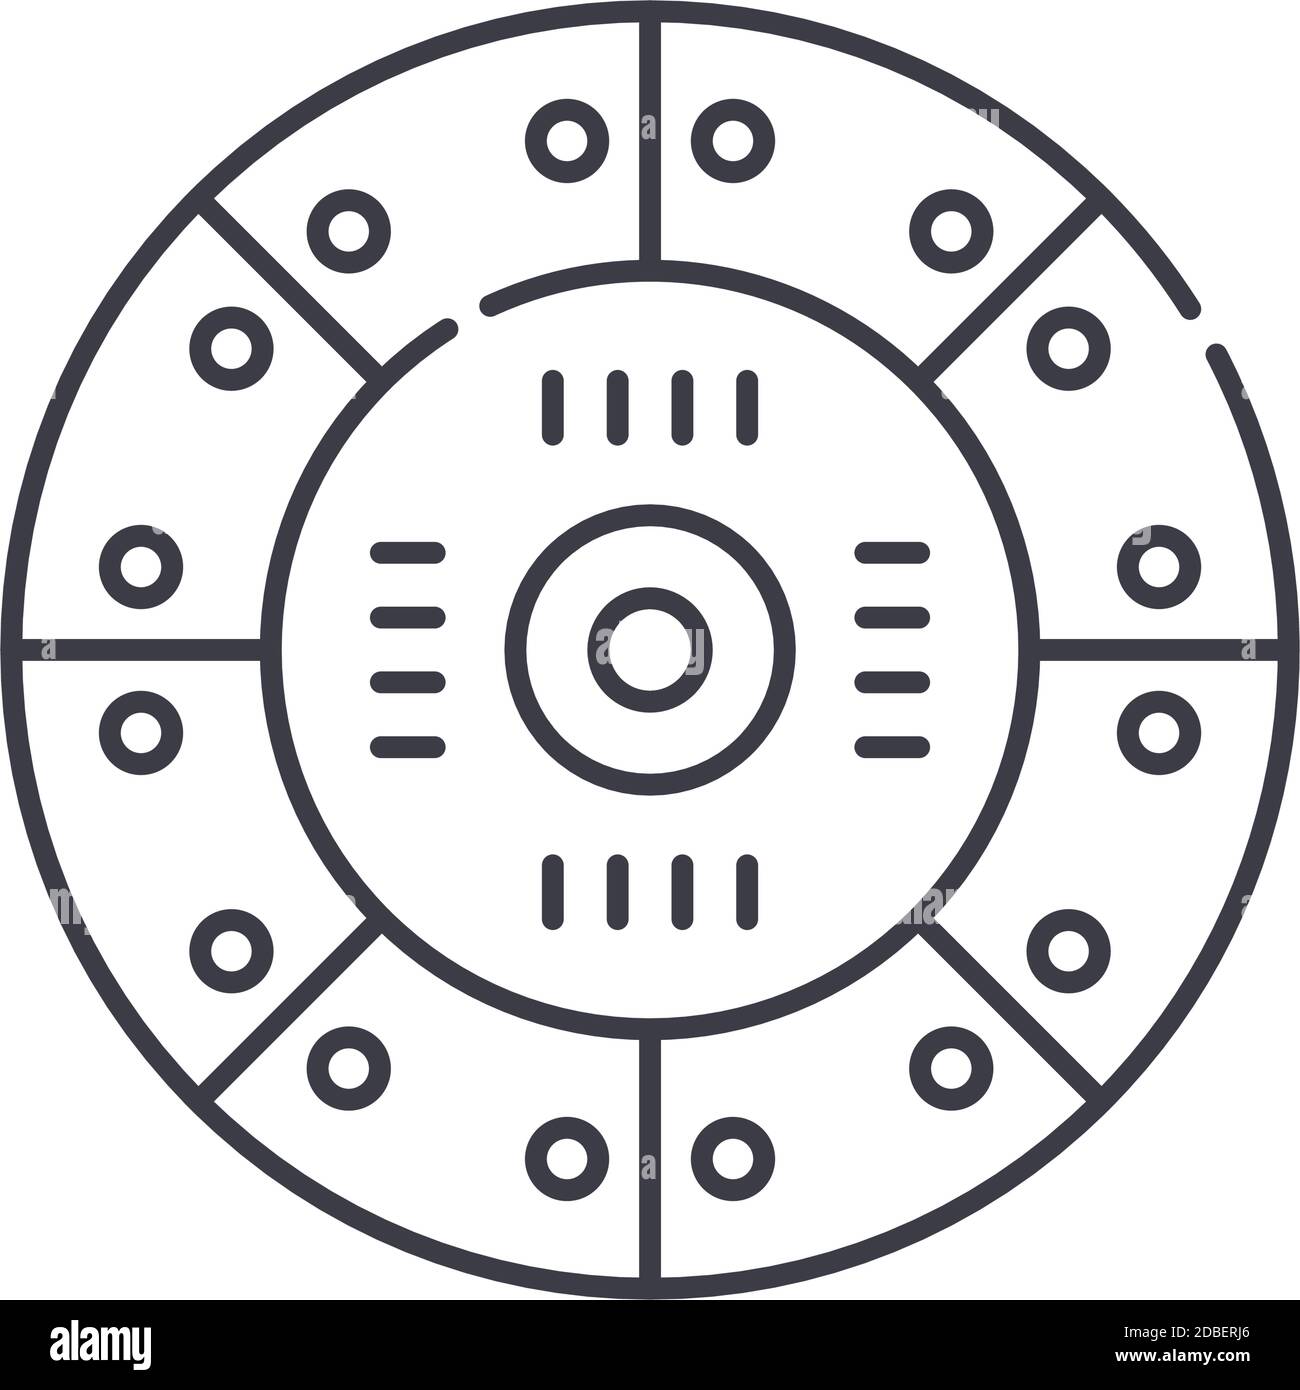 Icona del disco della frizione, illustrazione isolata lineare, vettore di linea sottile, simbolo di disegno web, simbolo di concetto di contorno con tratto modificabile su sfondo bianco. Illustrazione Vettoriale